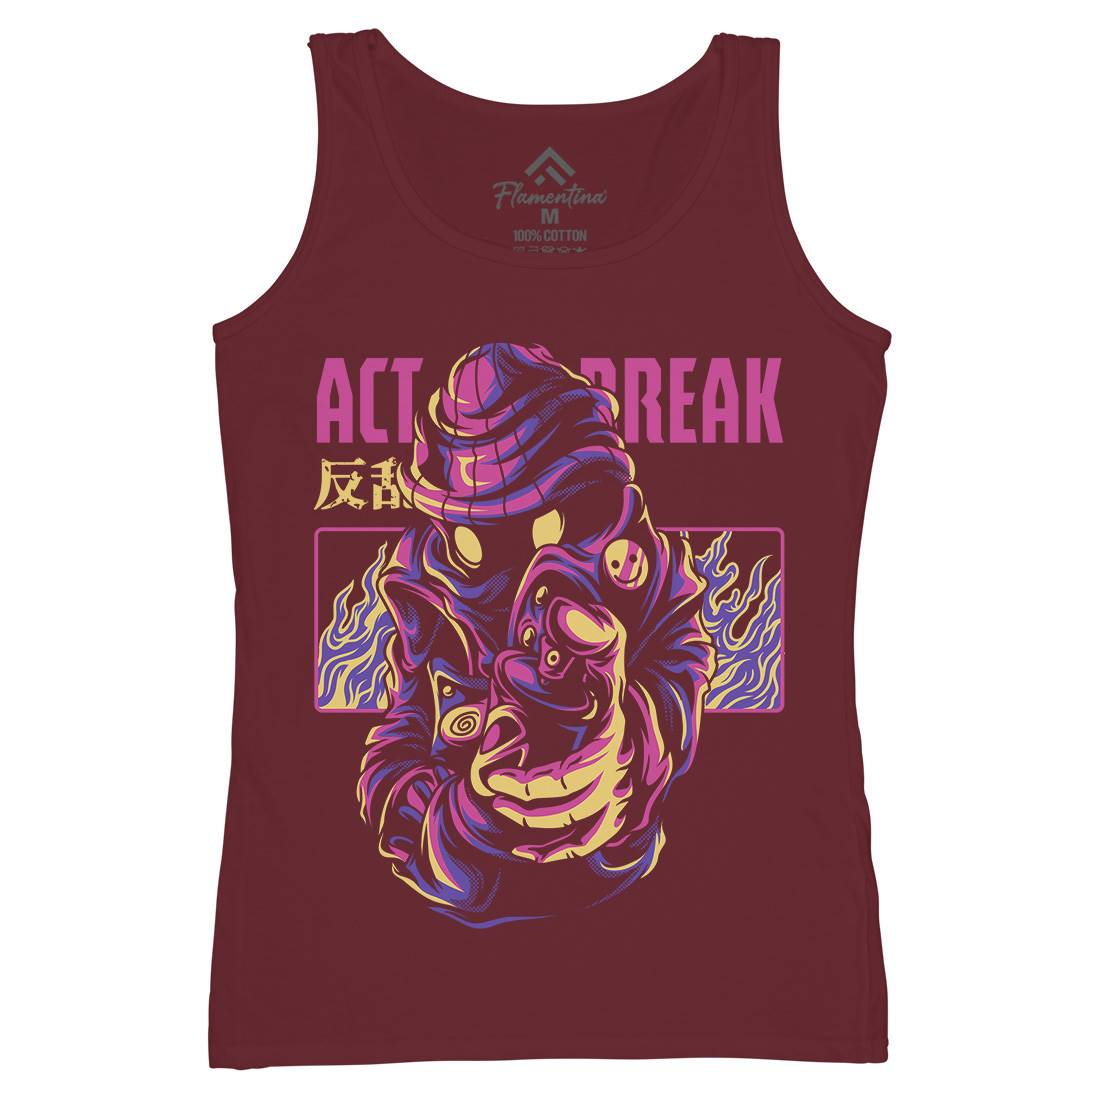 Act Break Womens Organic Tank Top Vest Graffiti D700